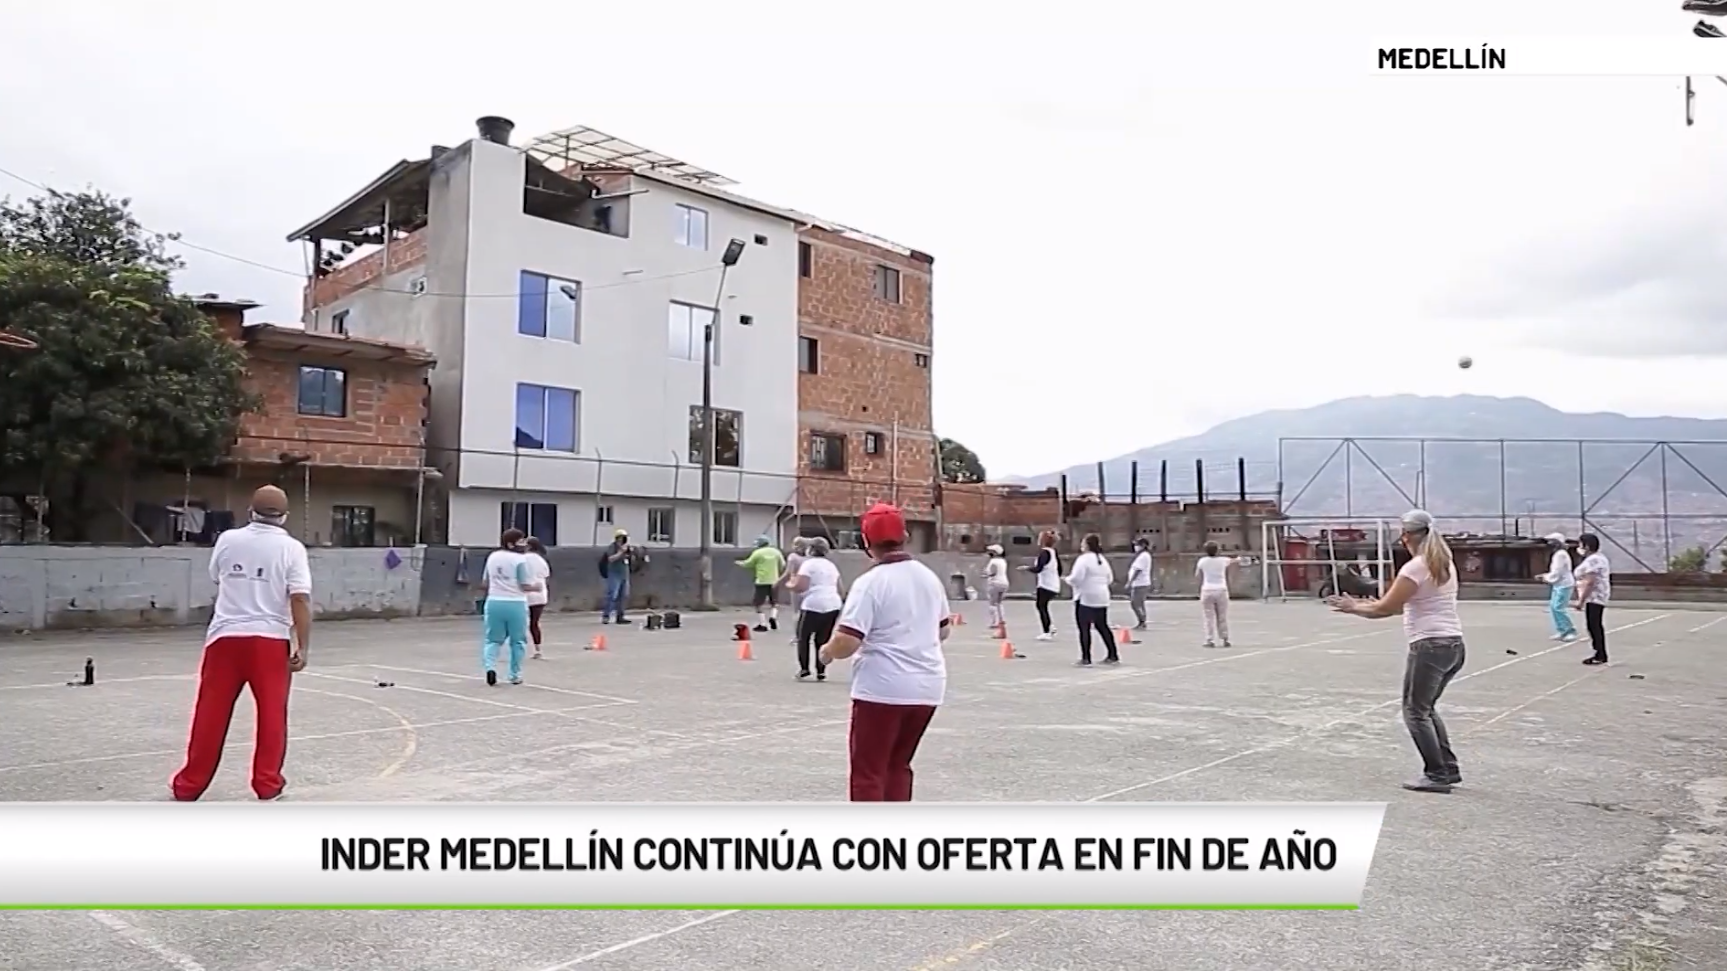 Inder Medellín continúa con oferta en fin de año